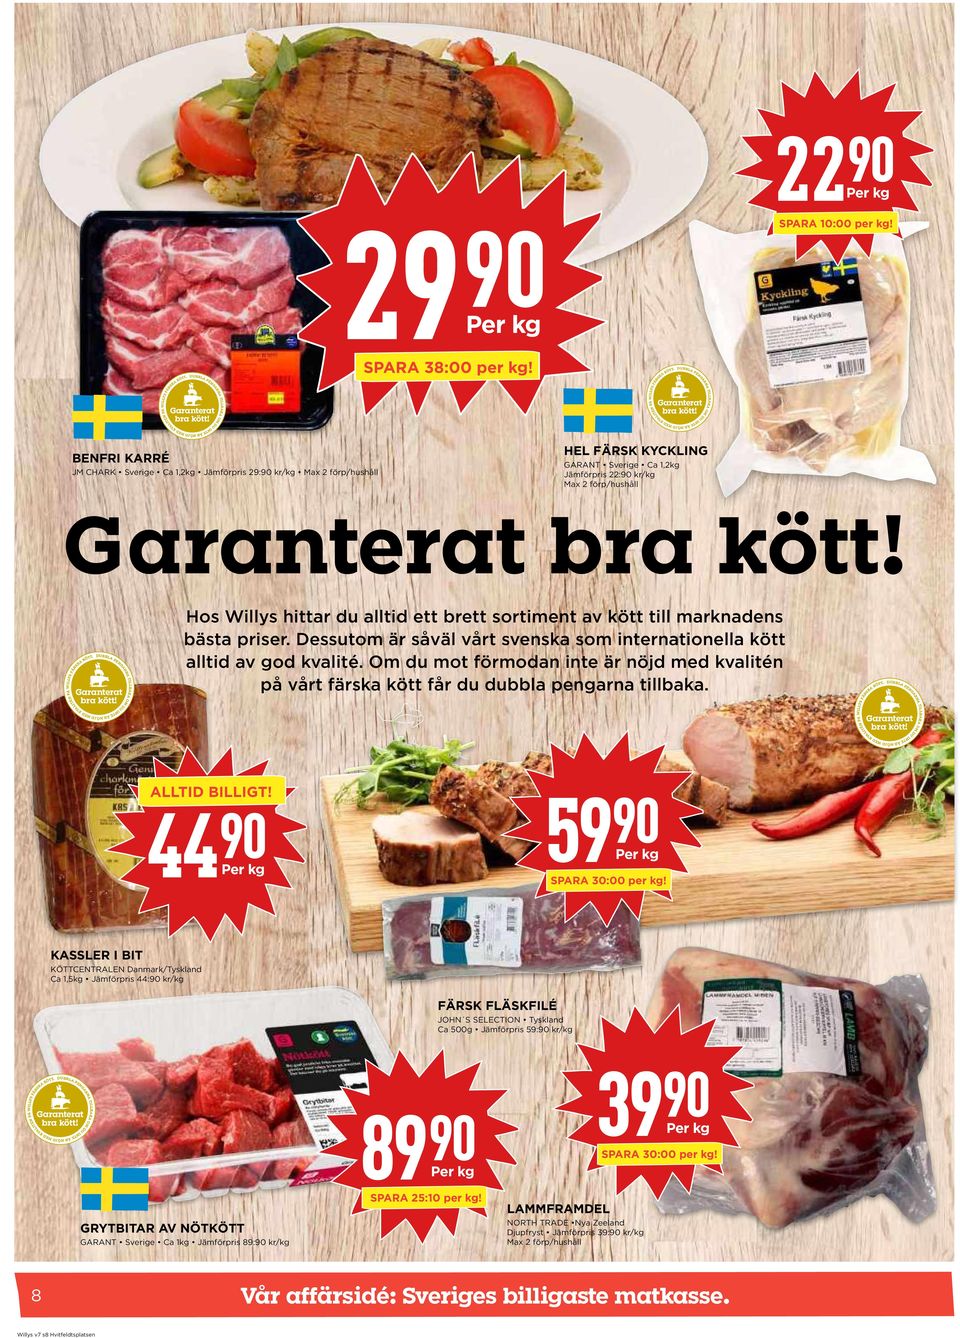 brett sortiment av kött till marknadens bästa priser. Dessutom är såväl vårt svenska som internationella kött alltid av god kvalité.